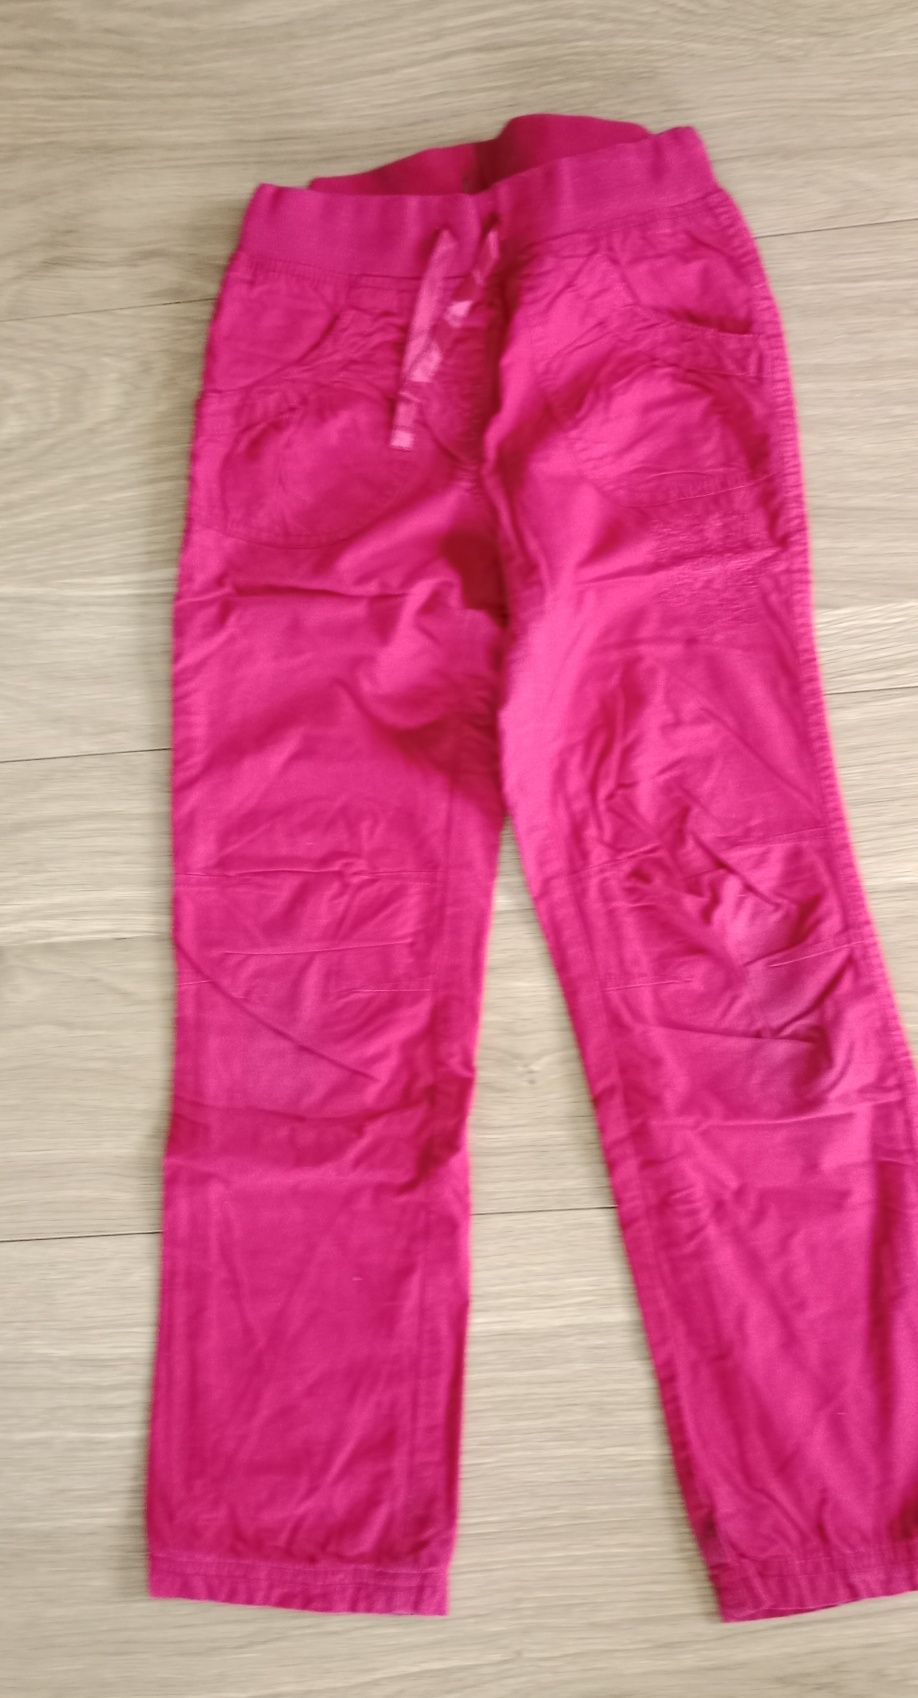 Ocieplane spodnie dla dziewczynki - na zimę. Rozmiar 128 cm